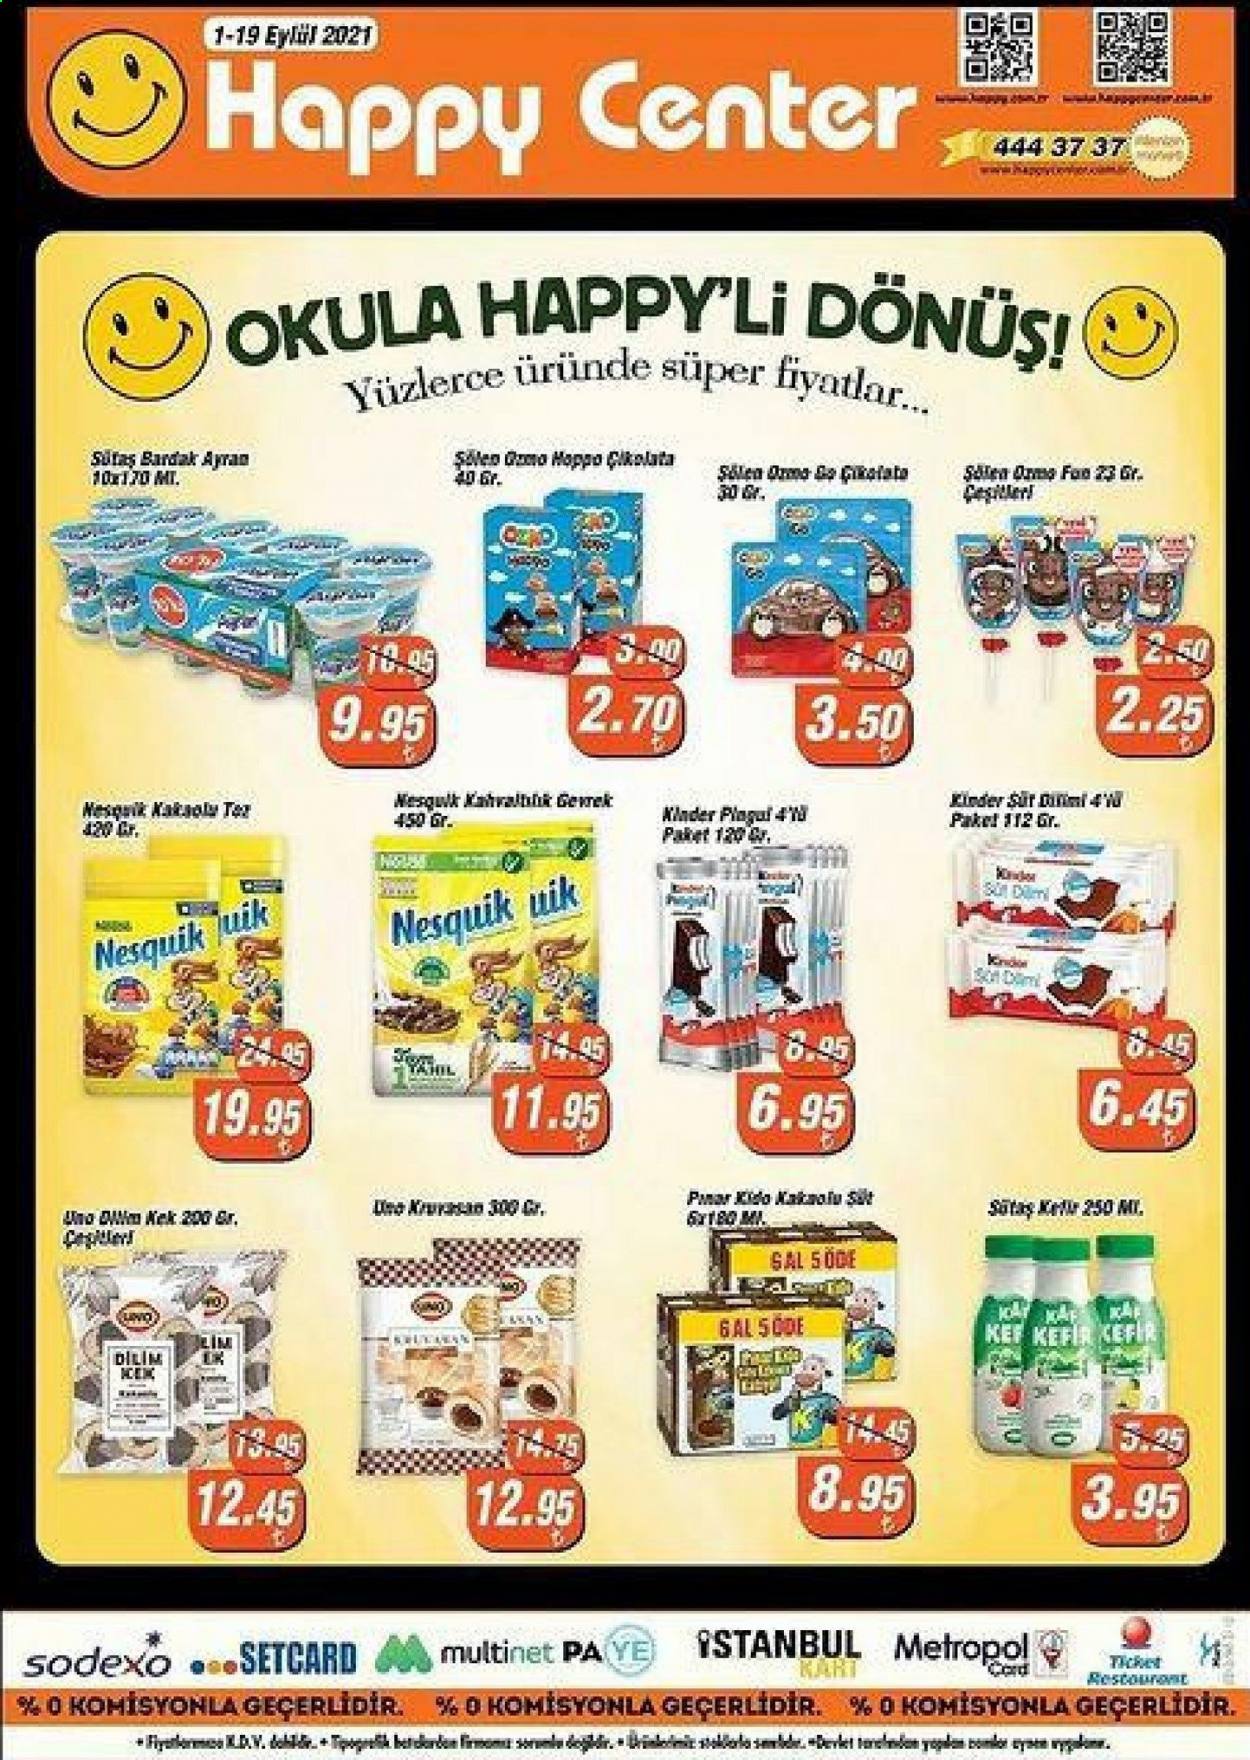 thumbnail - Happy Center aktüel ürünler, broşür  - 9.1.2021 - 9.19.2021 - Satıştaki ürünler - Sütas, ayran, kefir, çikolata, Nesquik. Sayfa 1.